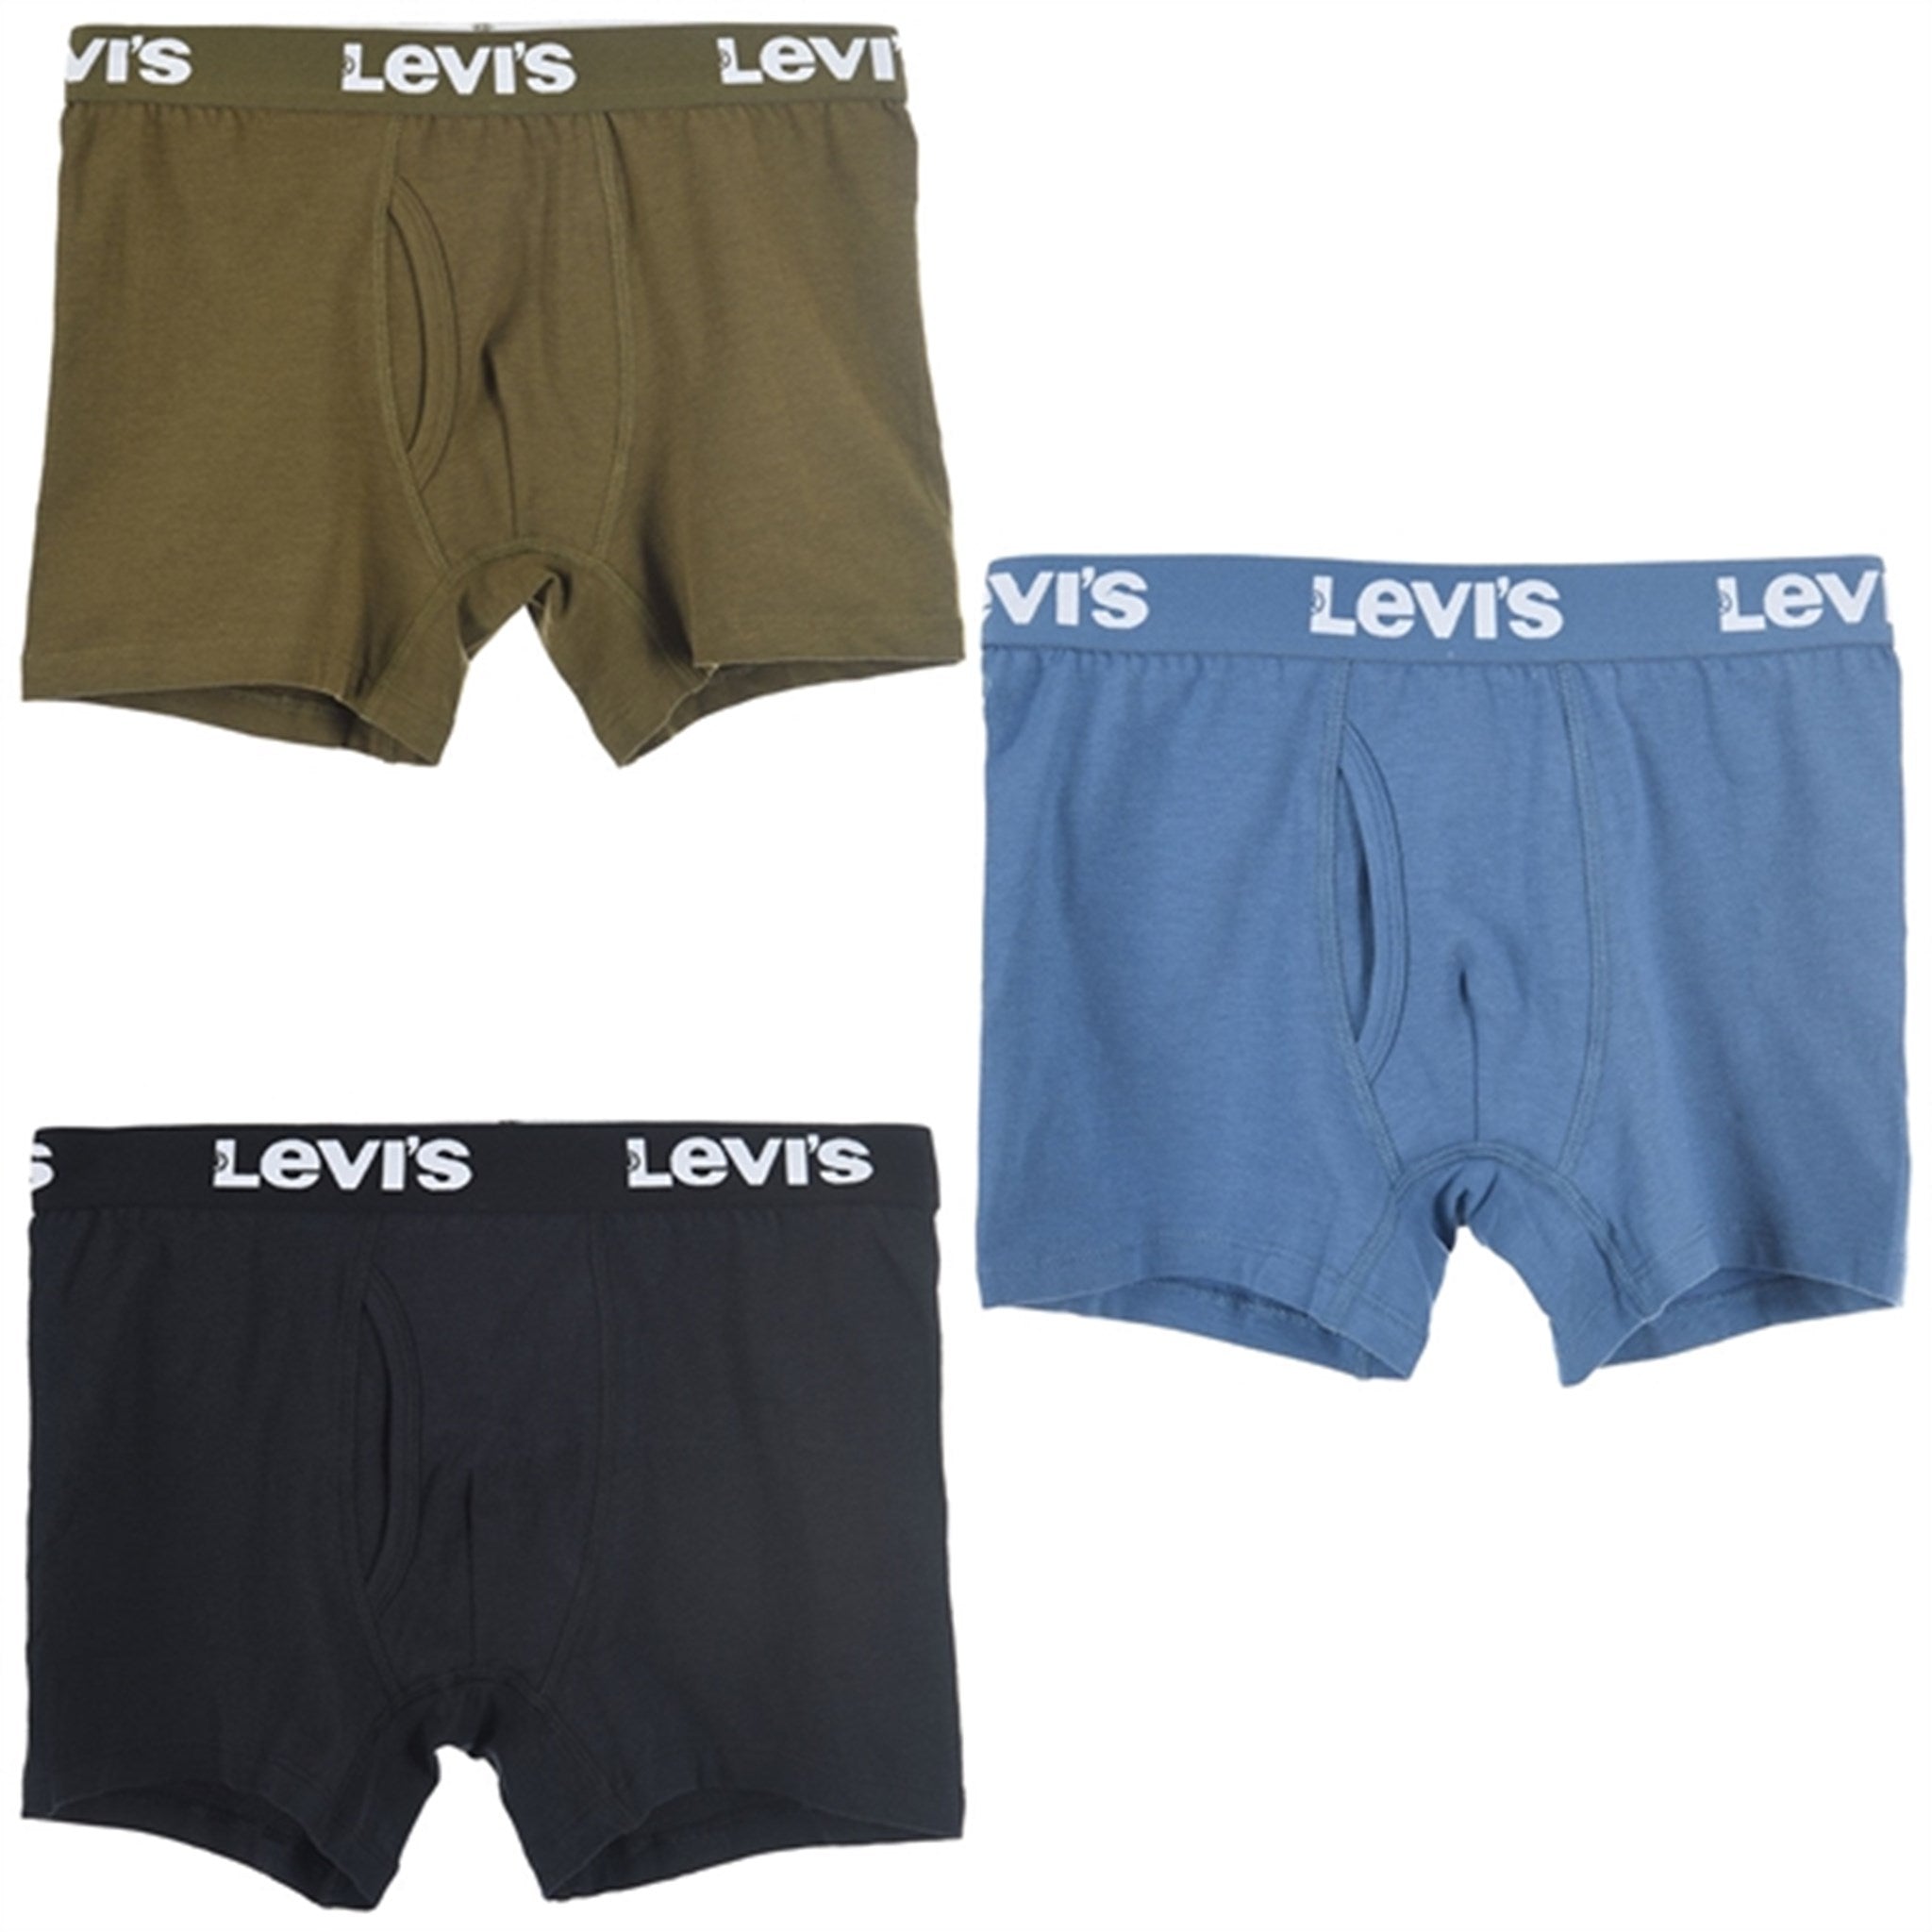 Levi's Boxershorts 3-Pak Black